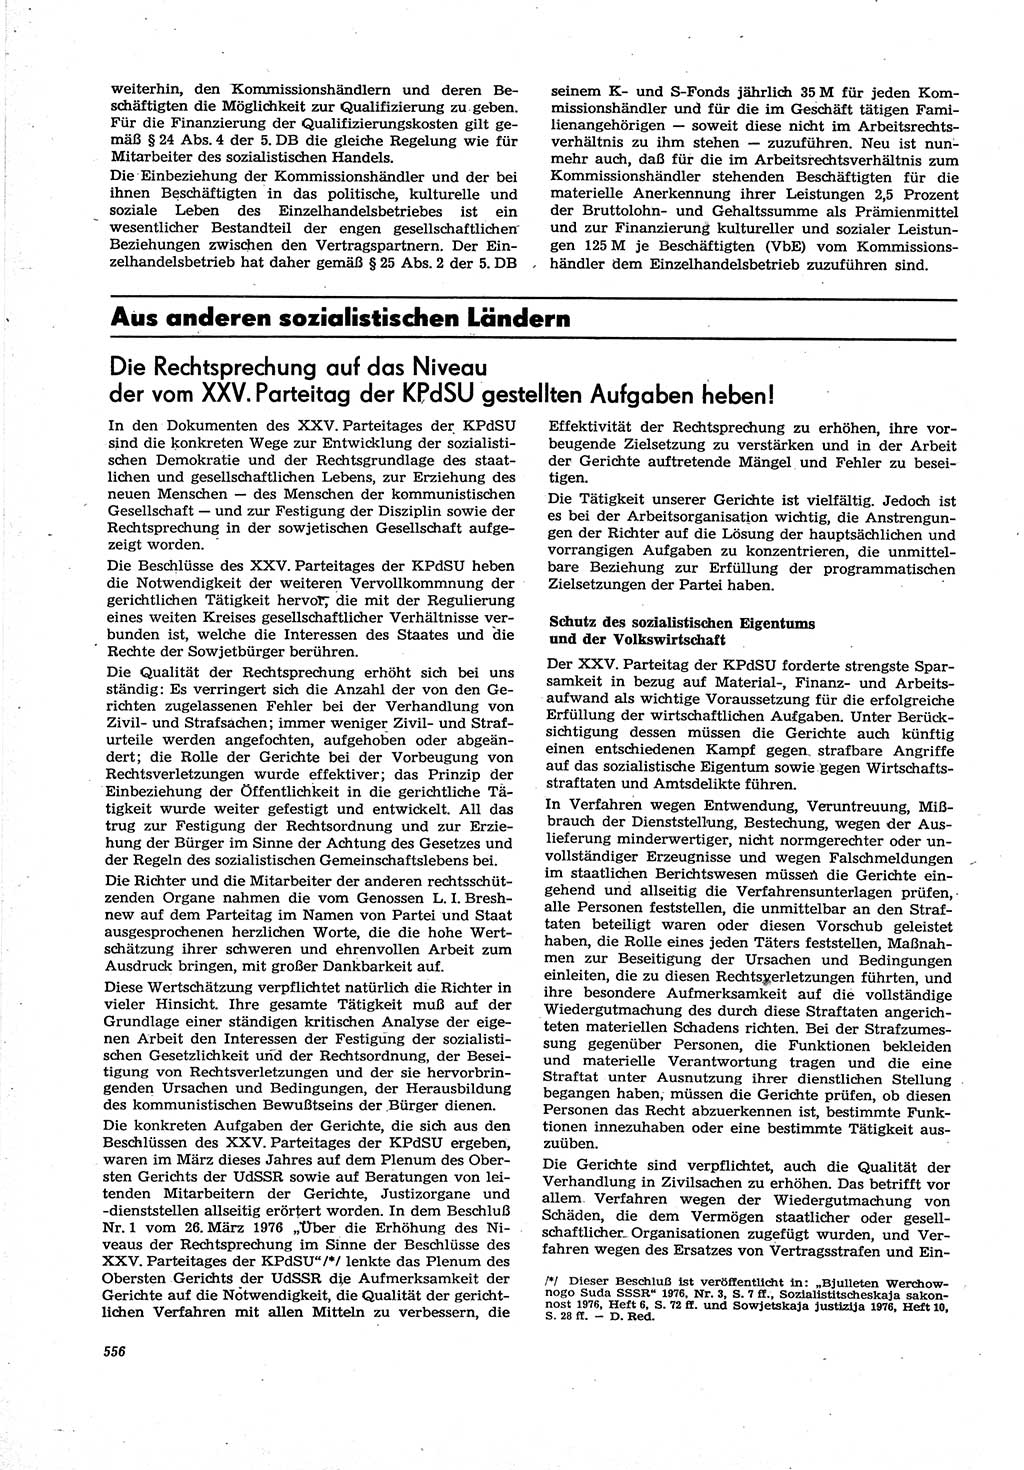 Neue Justiz (NJ), Zeitschrift für Recht und Rechtswissenschaft [Deutsche Demokratische Republik (DDR)], 30. Jahrgang 1976, Seite 556 (NJ DDR 1976, S. 556)